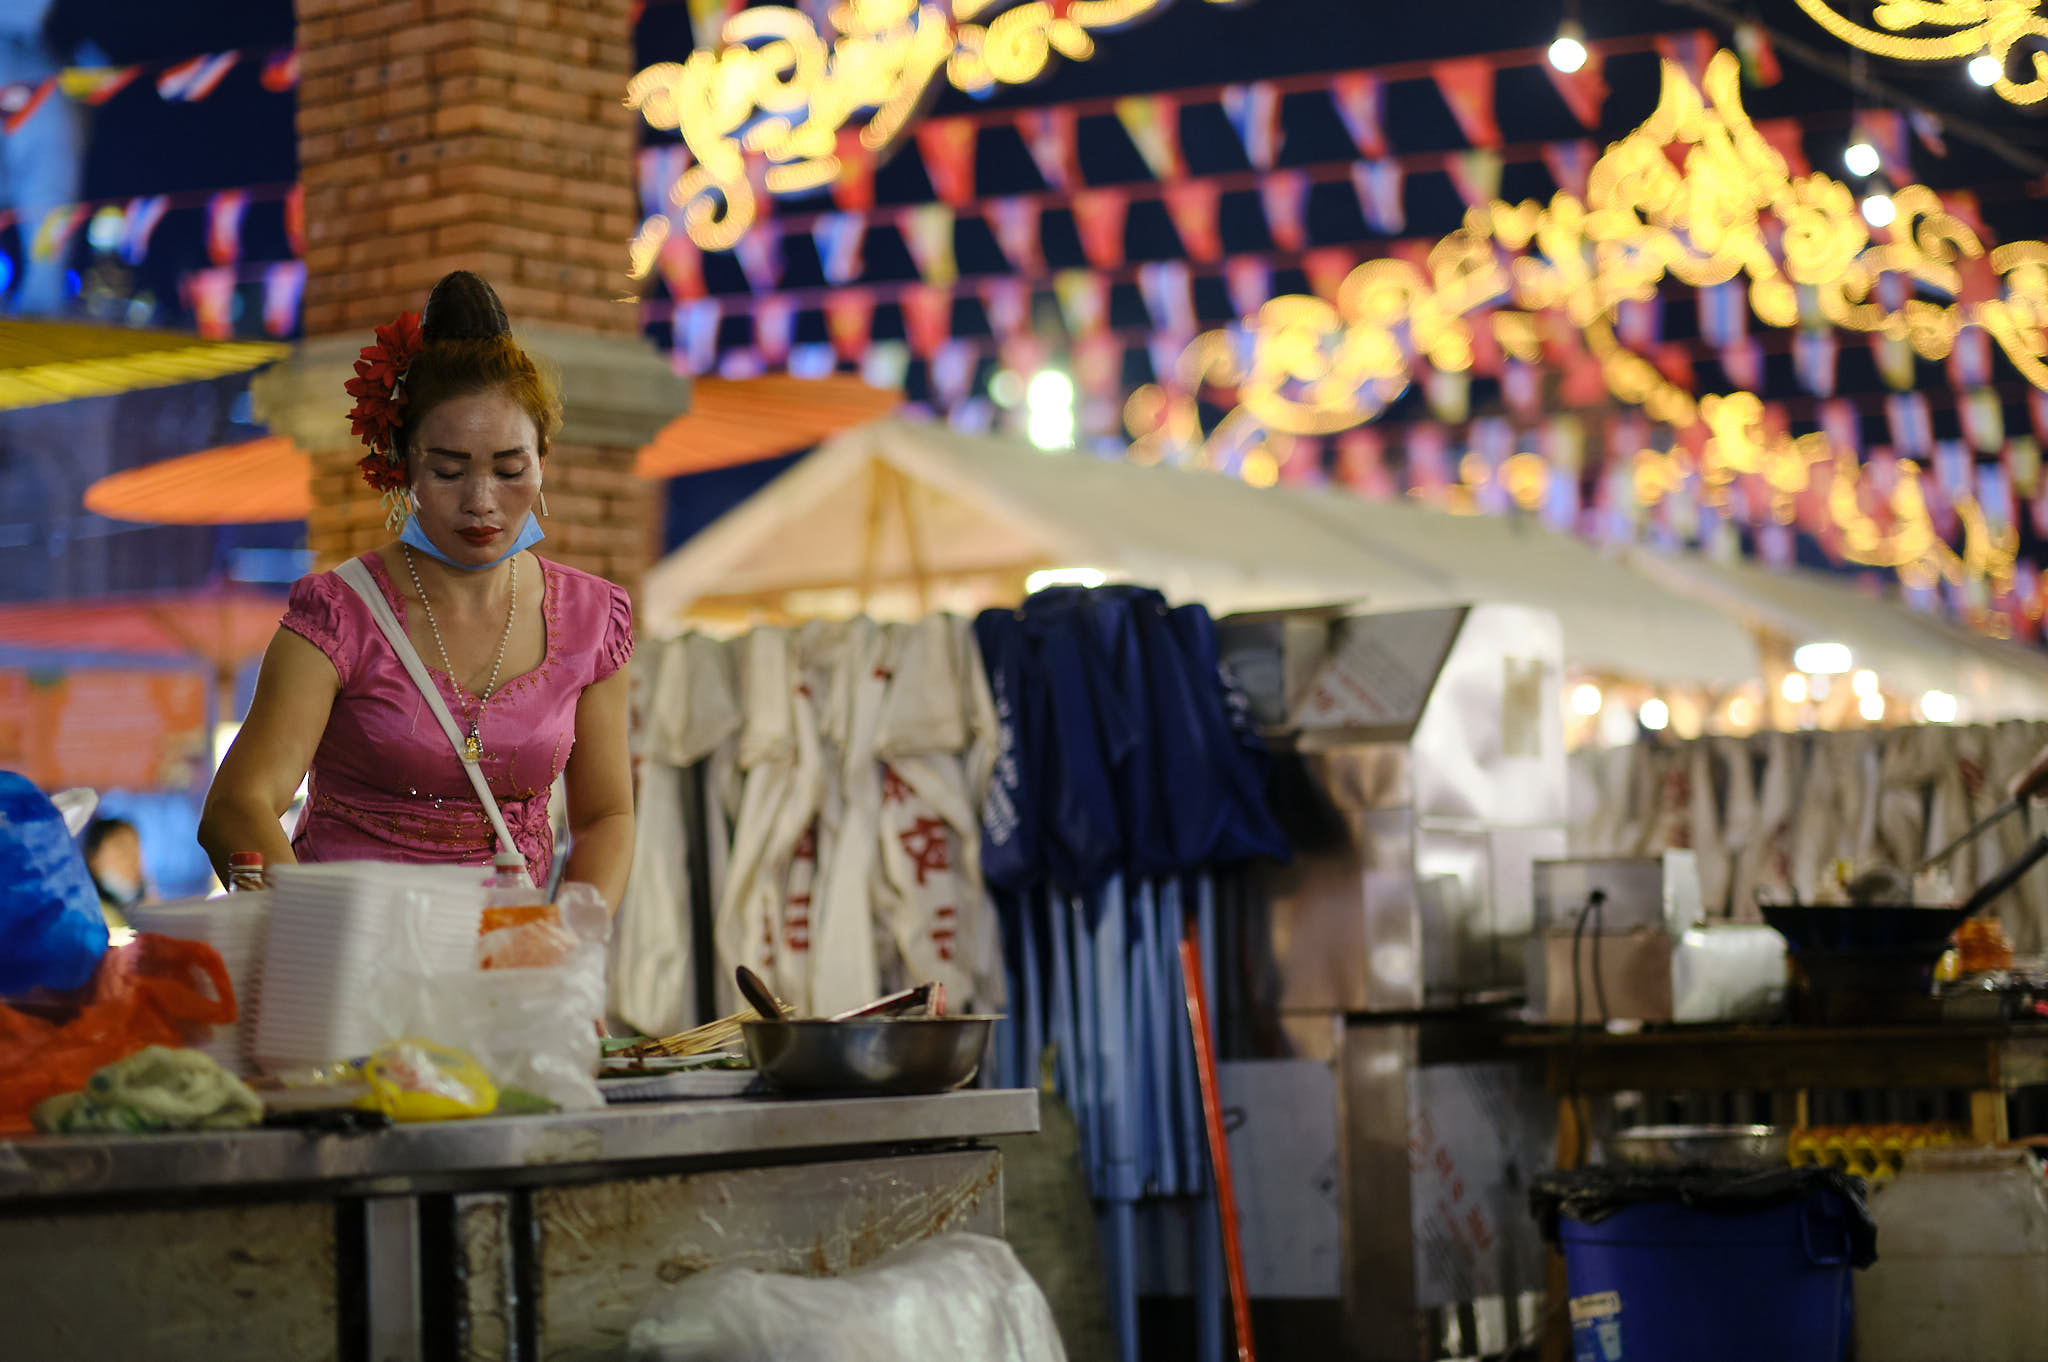 Gaozhuang Night Market 